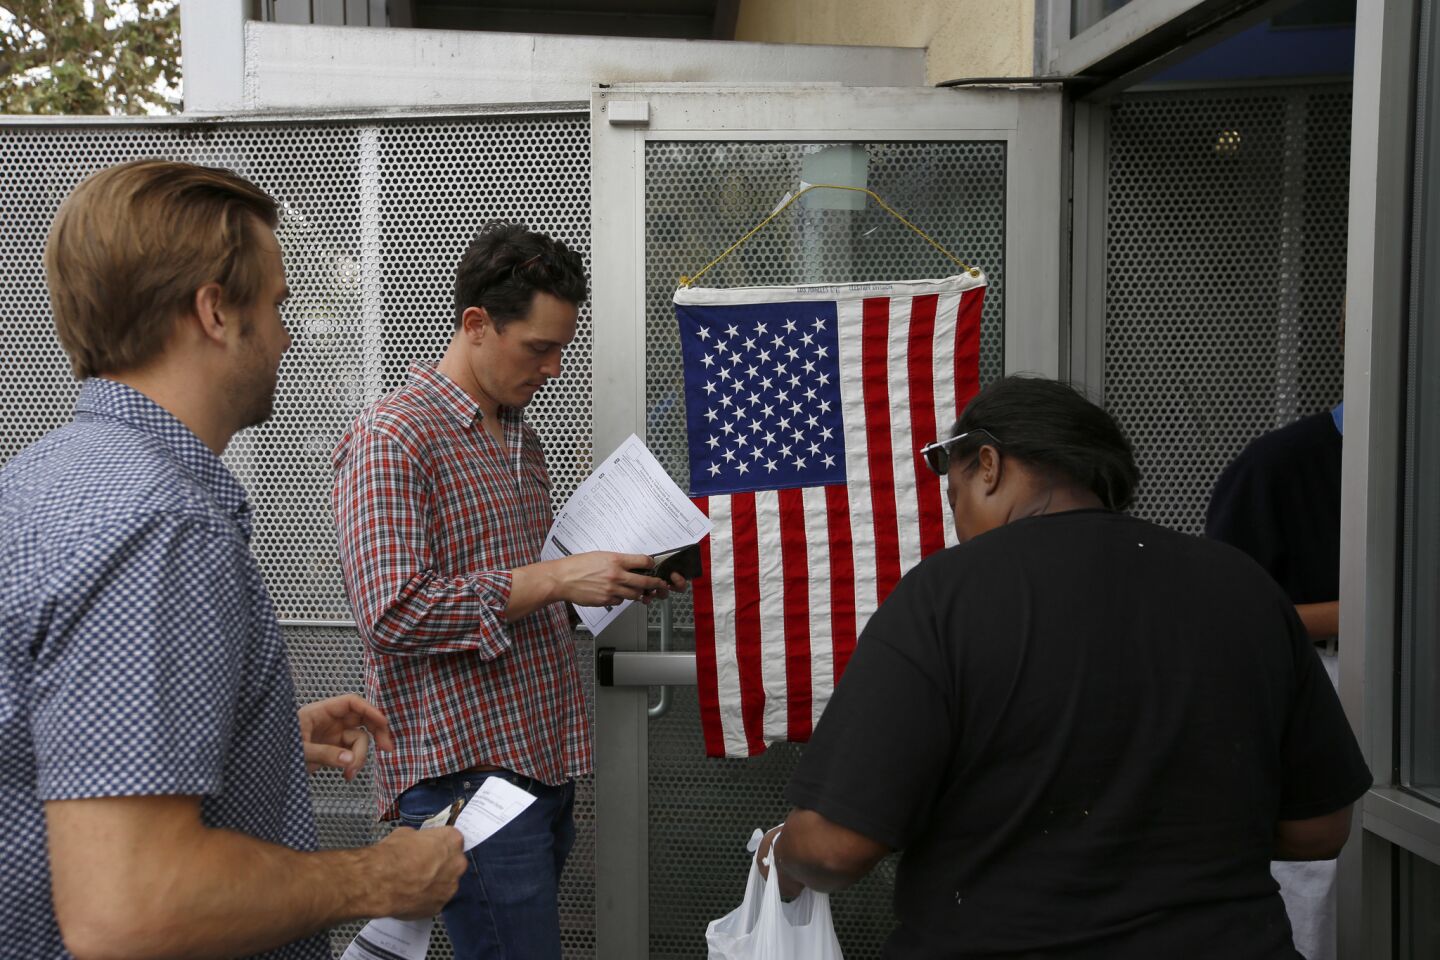 People wait in line to vote in the skid row neighborhood of Los Angeles.